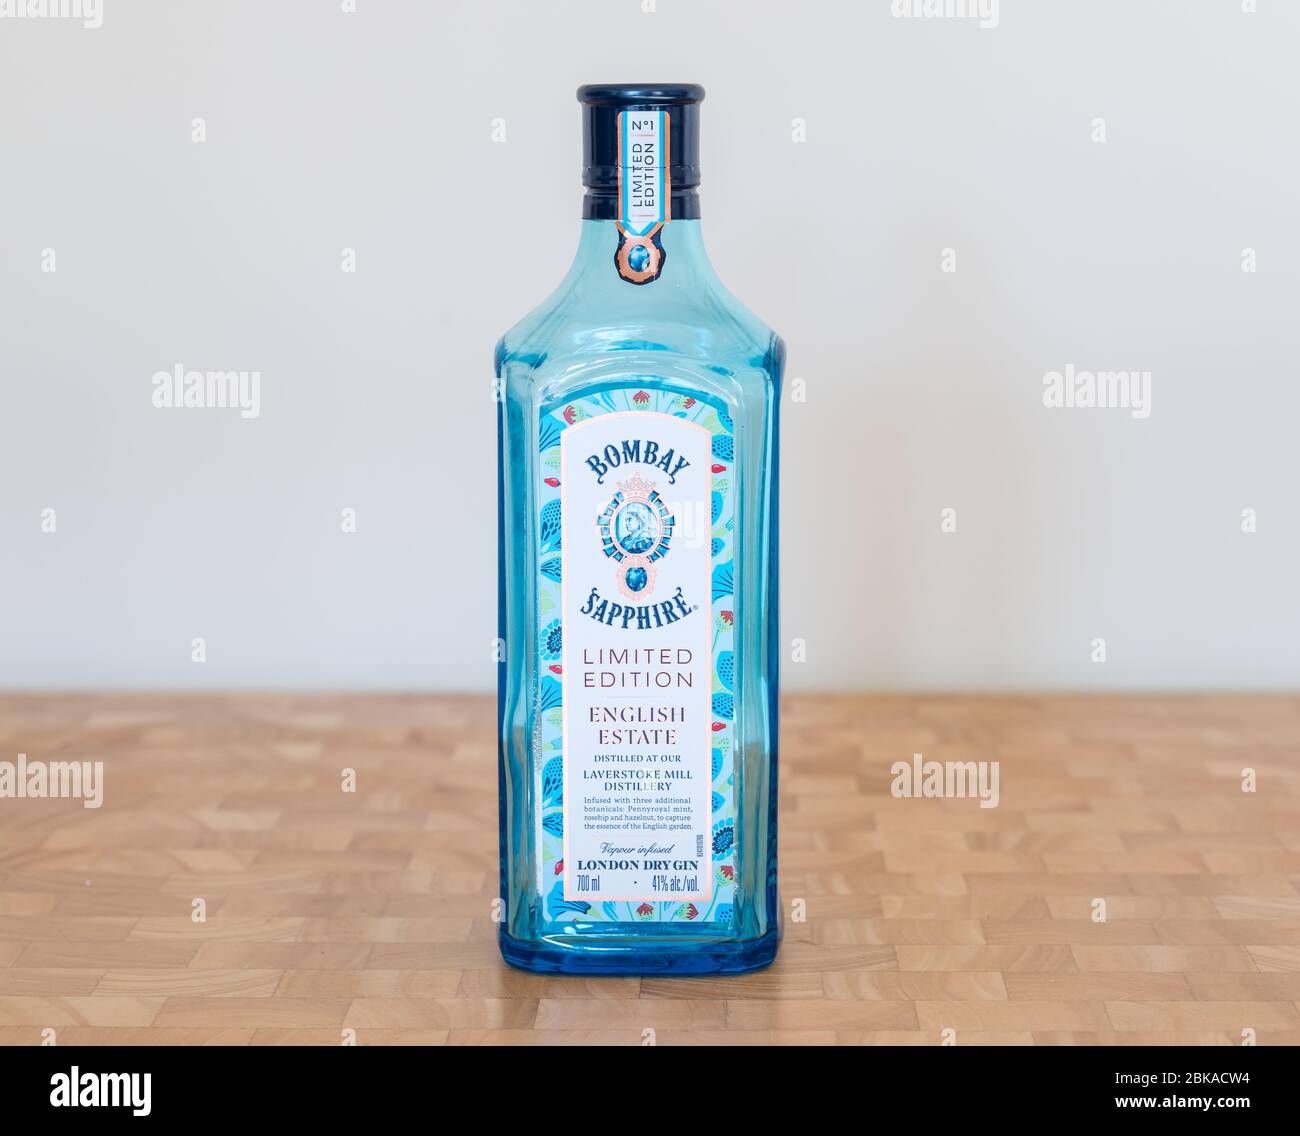 Bouteille de gin bleu Bombay Sapphire Limited Edition de la distillerie Laverstoke Mill, Angleterre, Royaume-Uni Banque D'Images